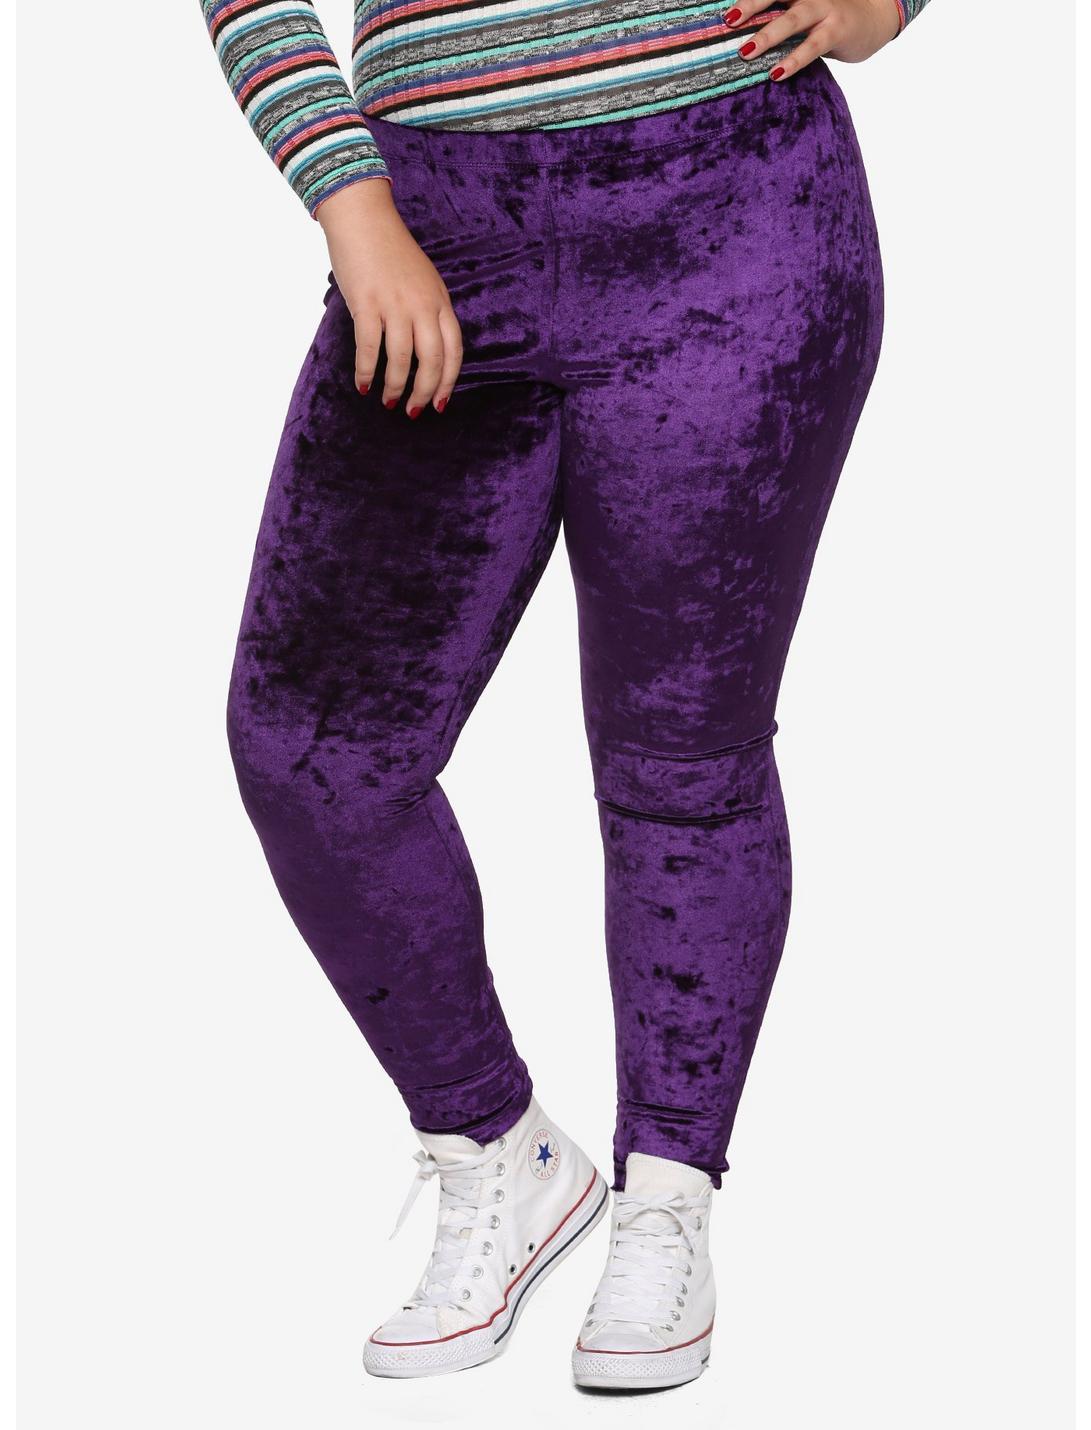 Blackheart Purple Velvet Leggings Plus Size, PURPLE, hi-res